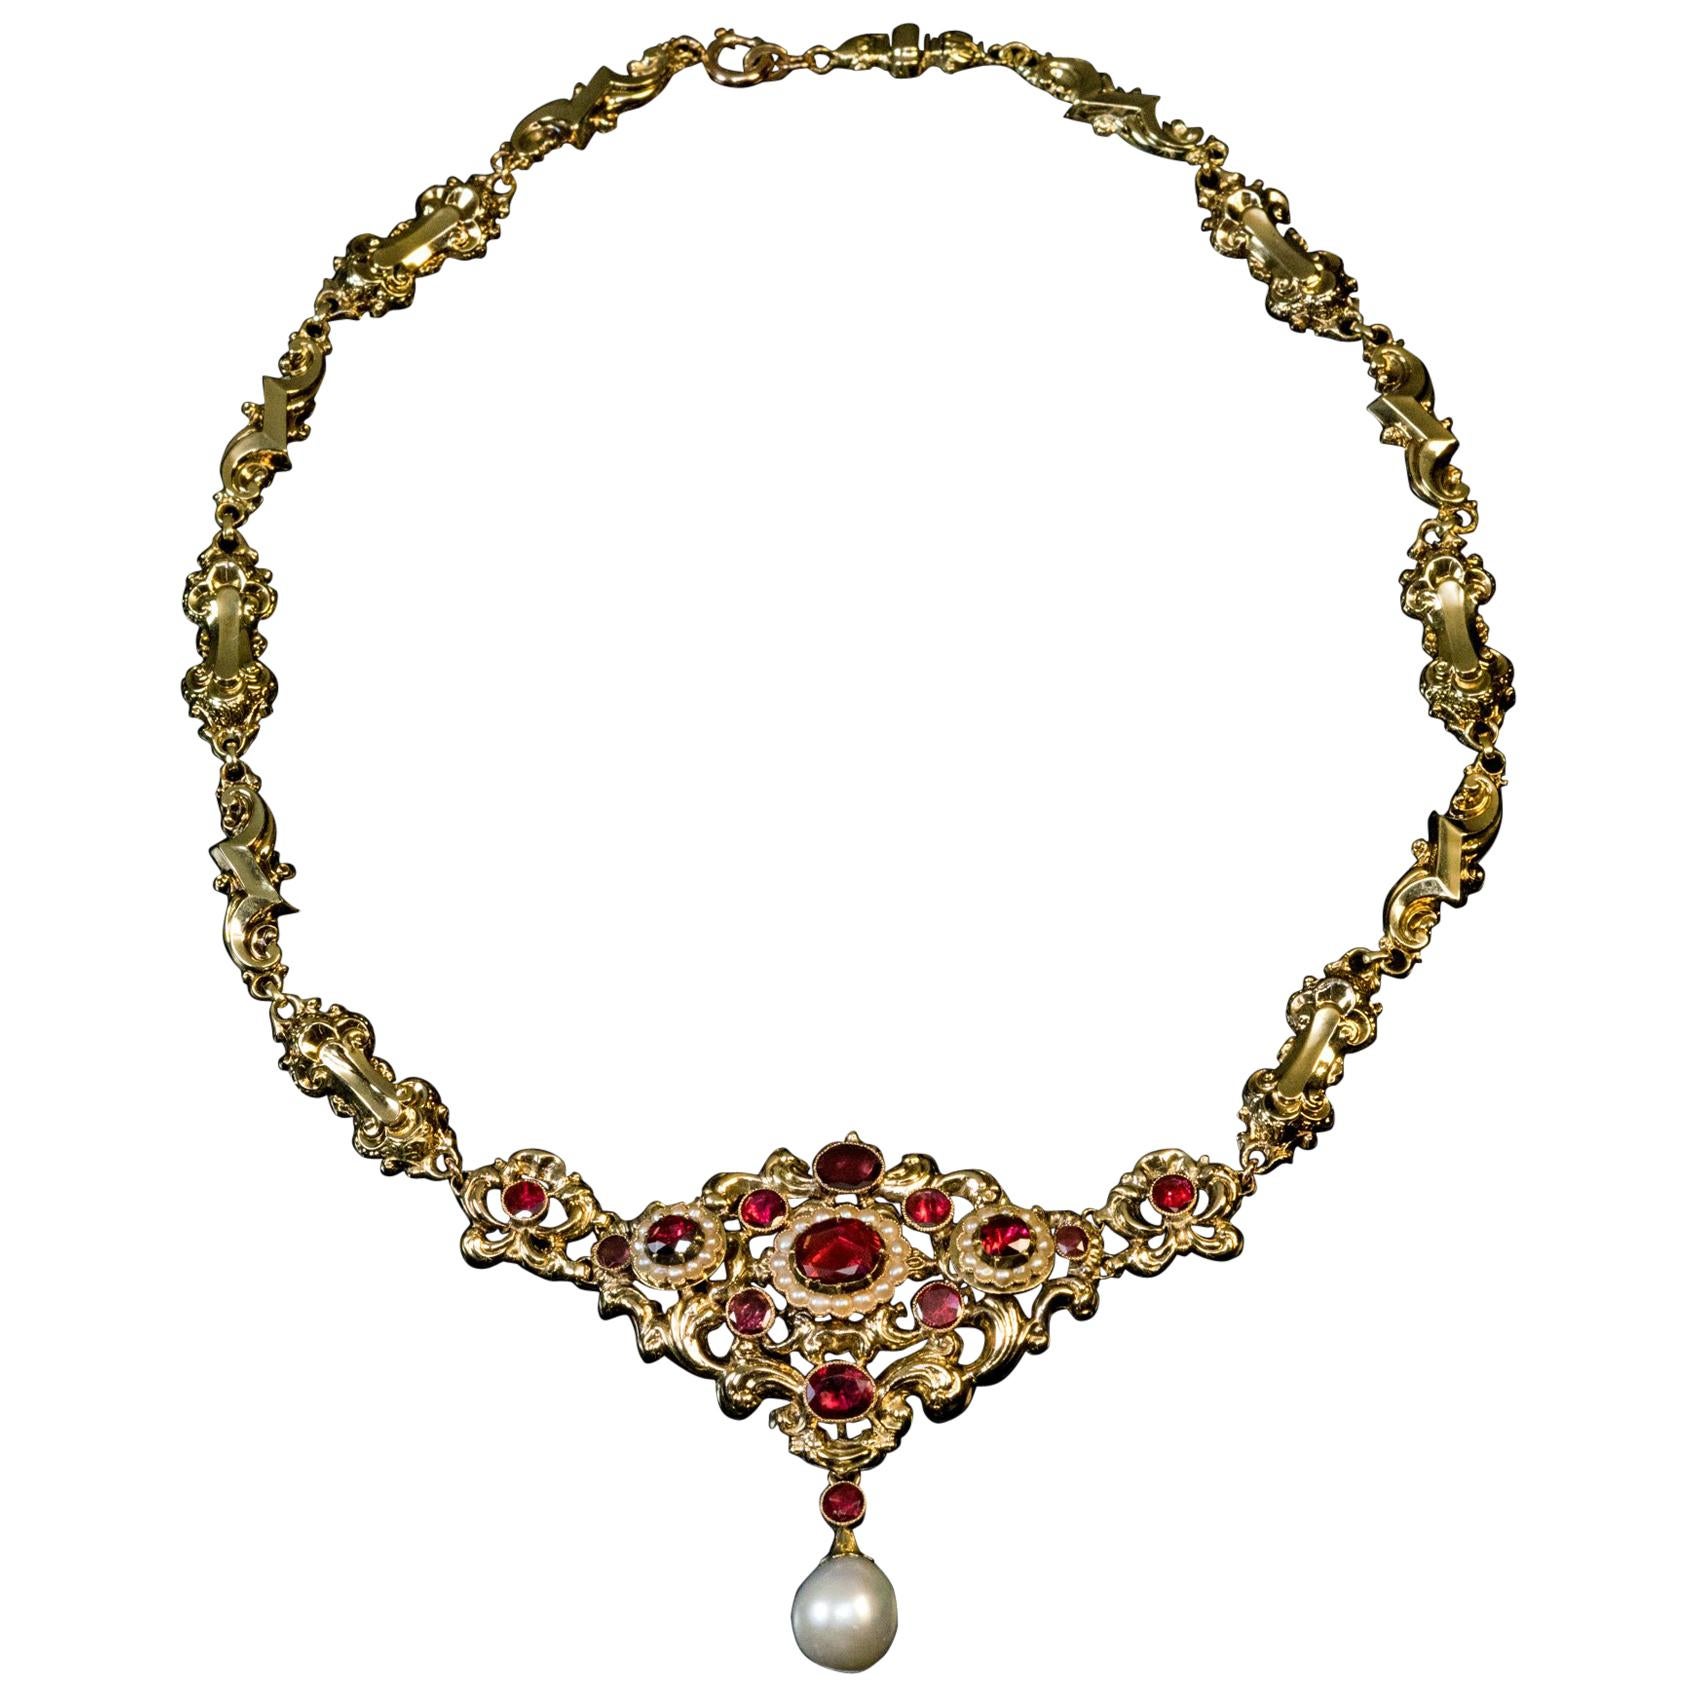 Collier ancien en or, perles et grenats, style néo-Renaissance